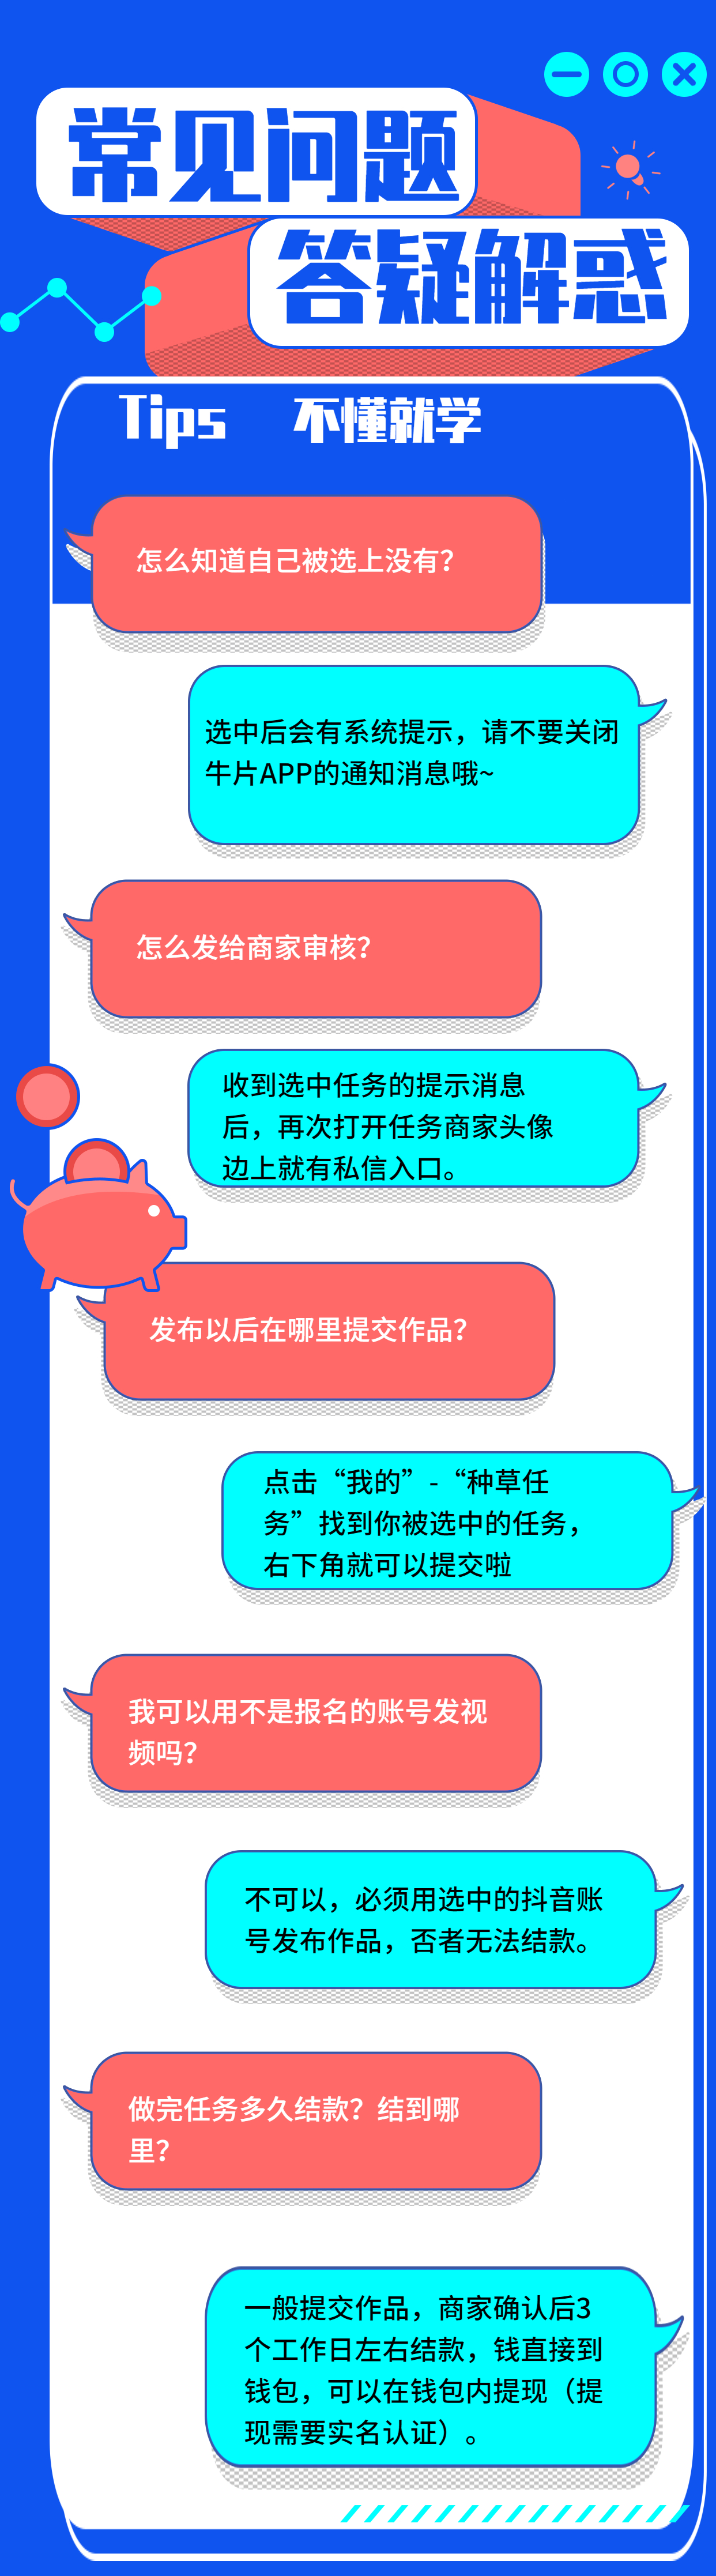 贷款问答每日精选理财知识科普海报 (1).jpg